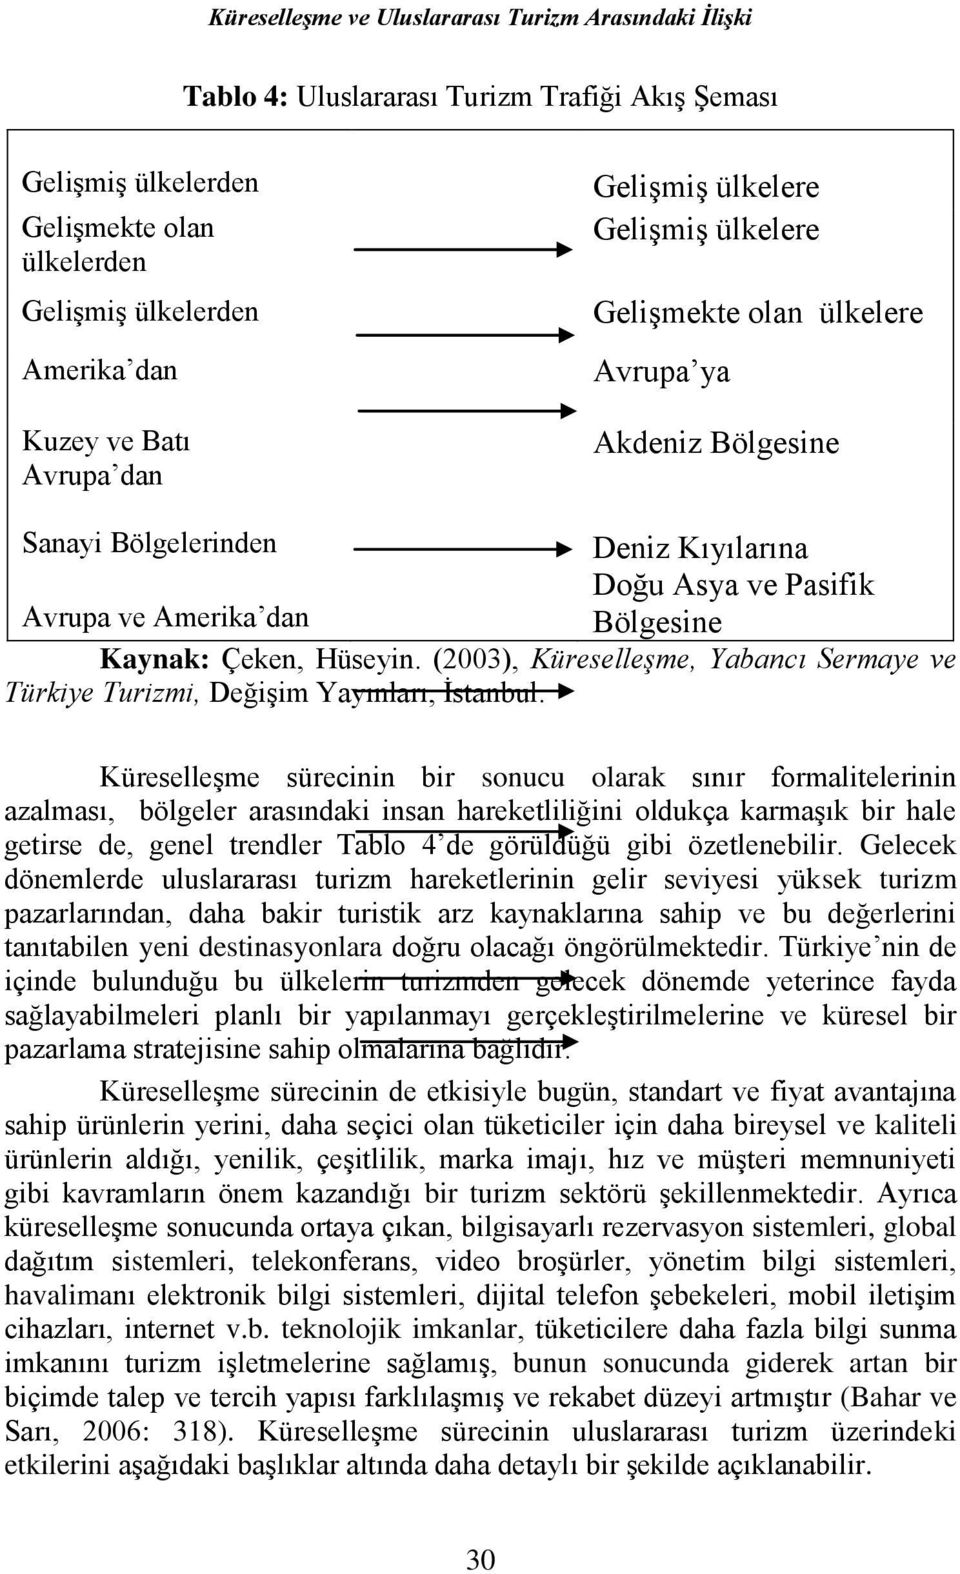 Çeken, Hüseyin. (2003), Küreselleşme, Yabancı Sermaye ve Türkiye Turizmi, Değişim Yayınları, İstanbul.